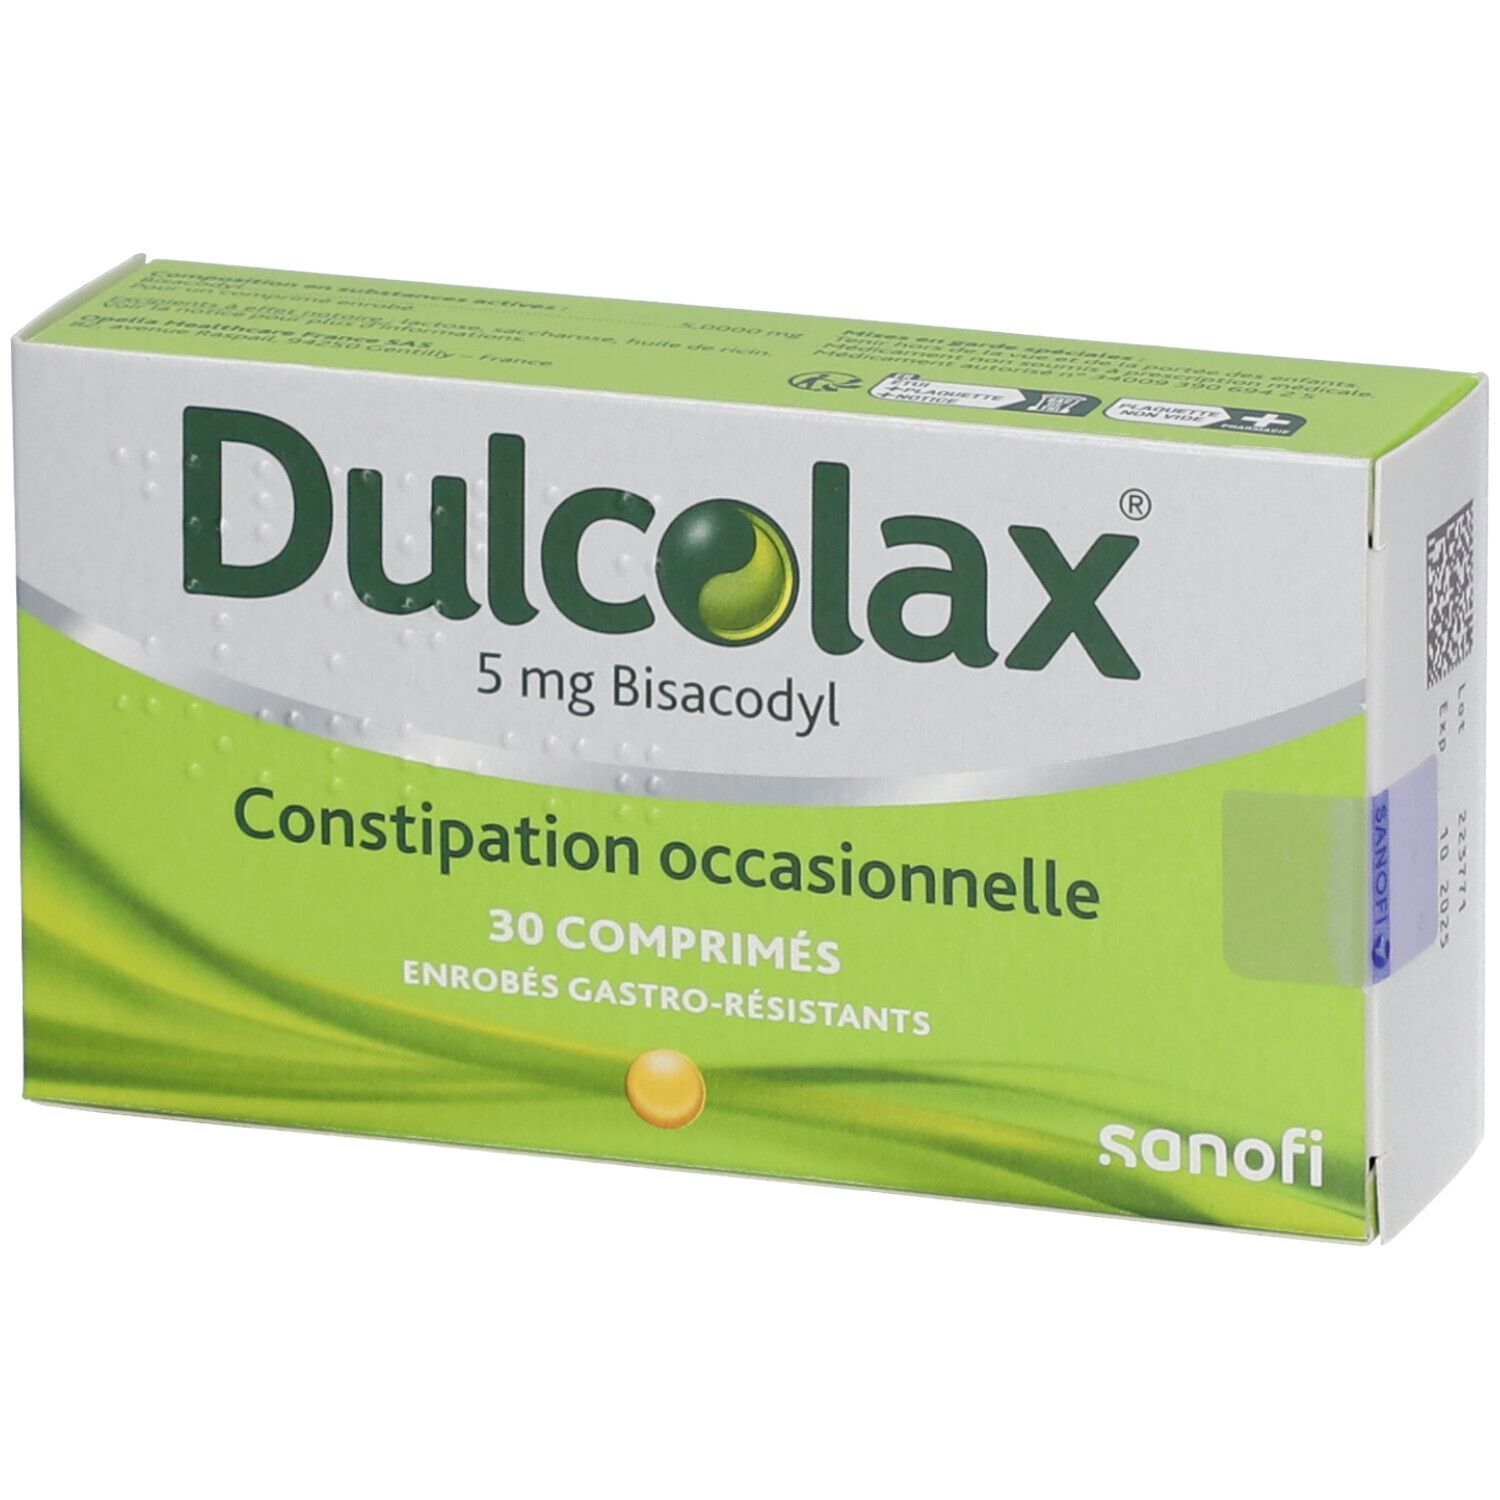 Dulcolax comprimé : médicament constipation - Laxatif sans ordonnance